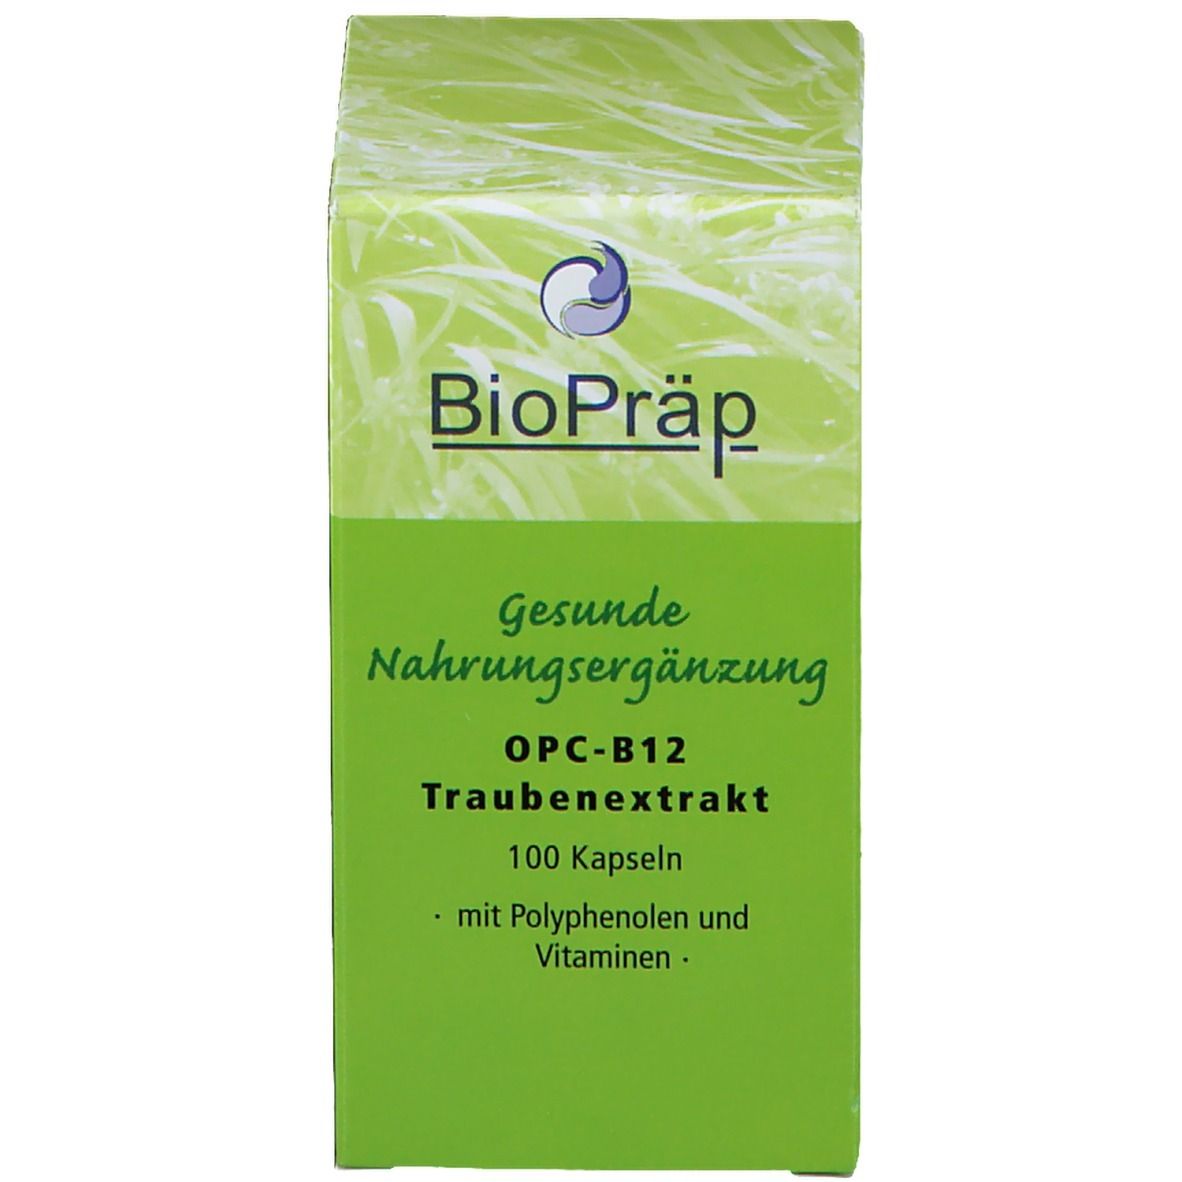 BioPräp OPC B12 Traubenextrakt Kapseln